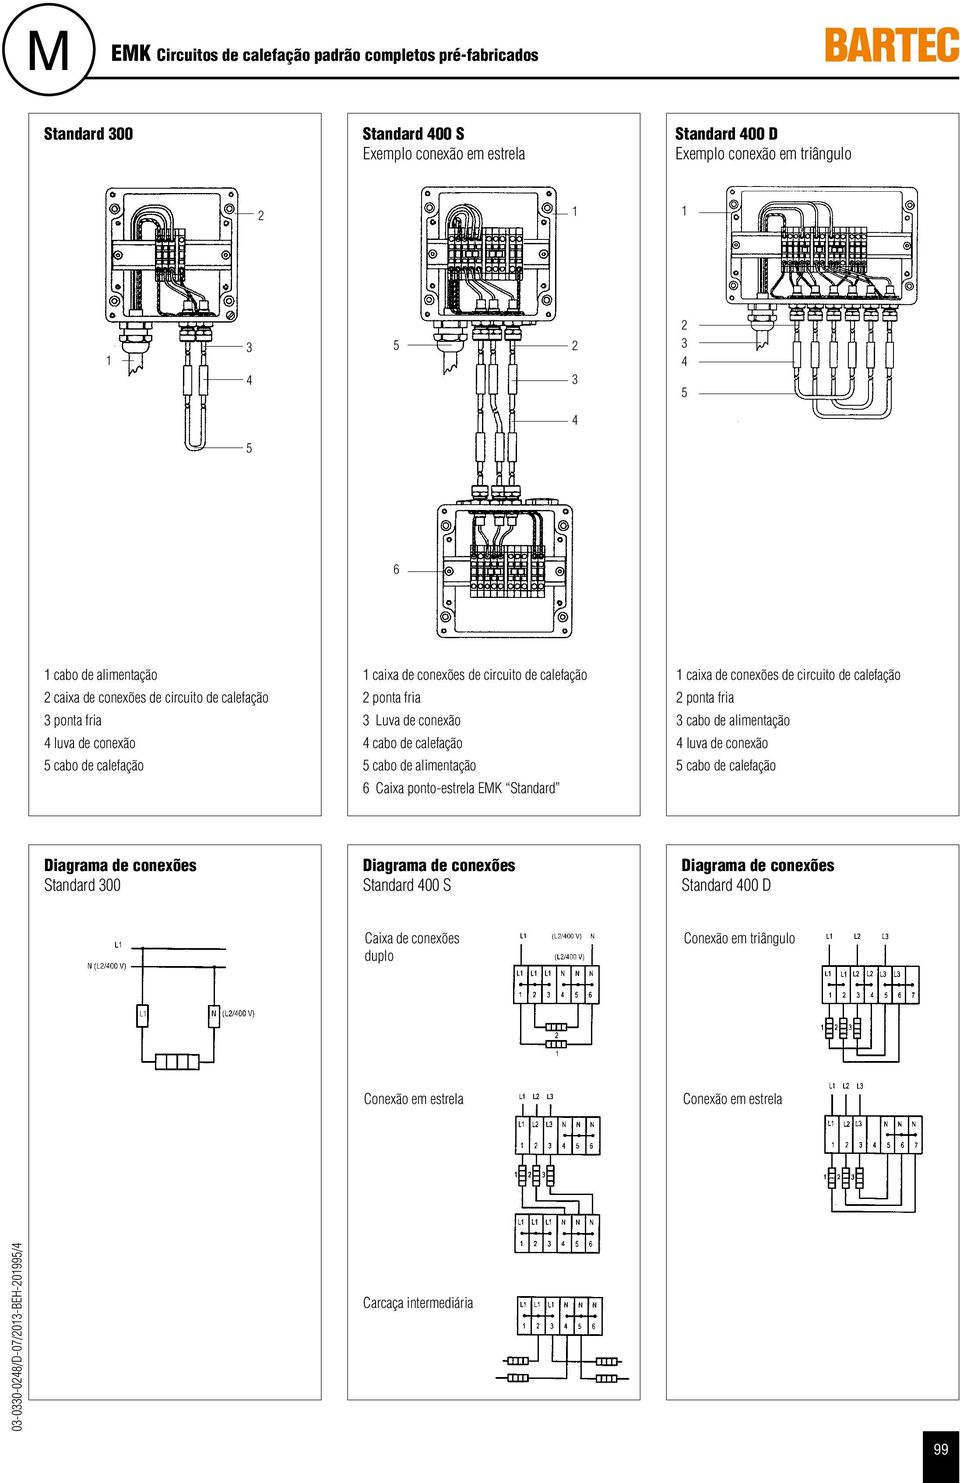 de conexão cabo de calefação cabo de alimentação 6 Caixa ponto-estrela EMK Standard caixa de conexões de circuito de calefação ponta fria cabo de alimentação luva